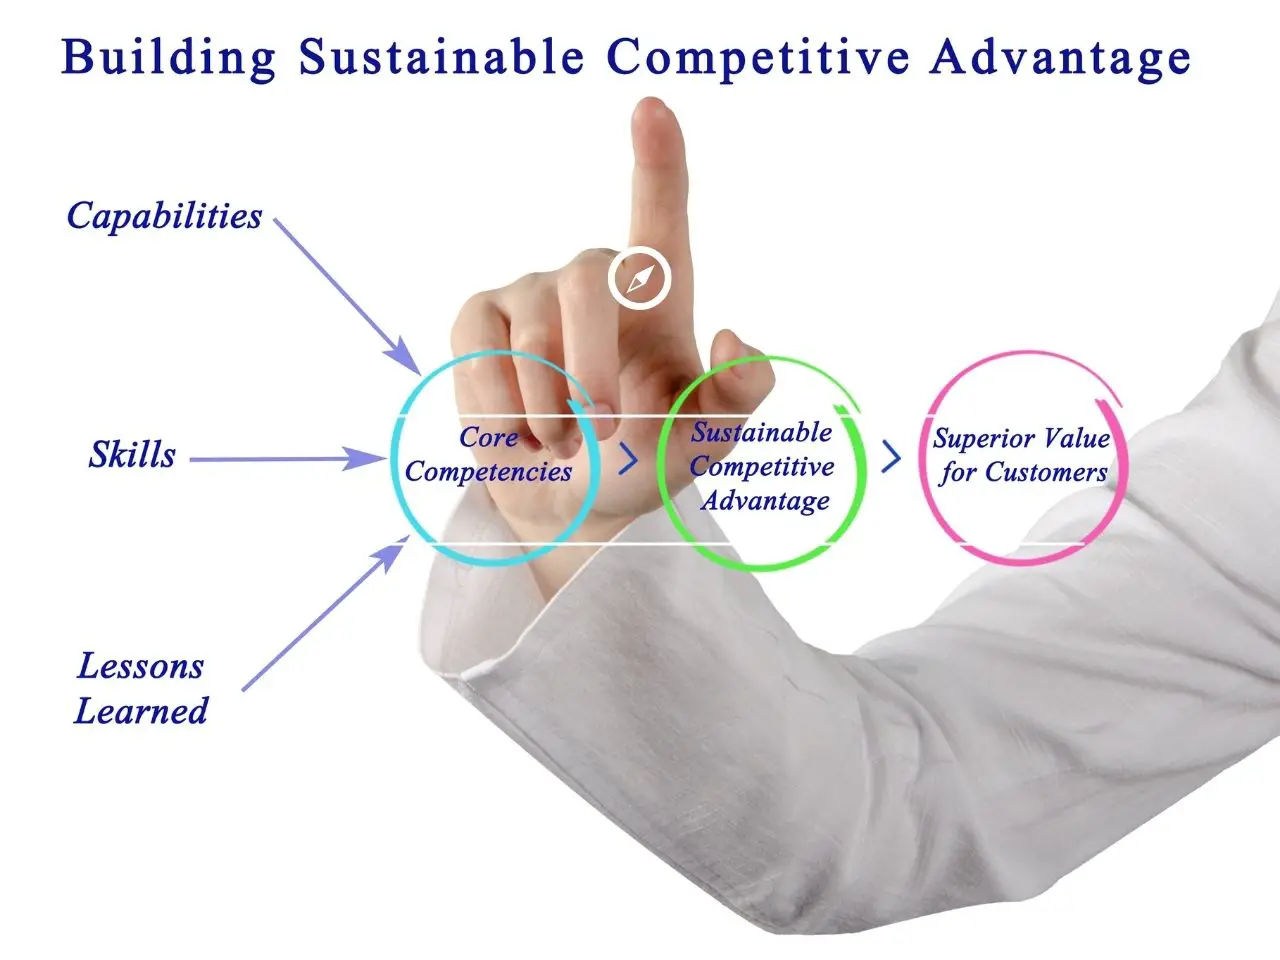 Definizione di vantaggio competitivo sostenibile, che è